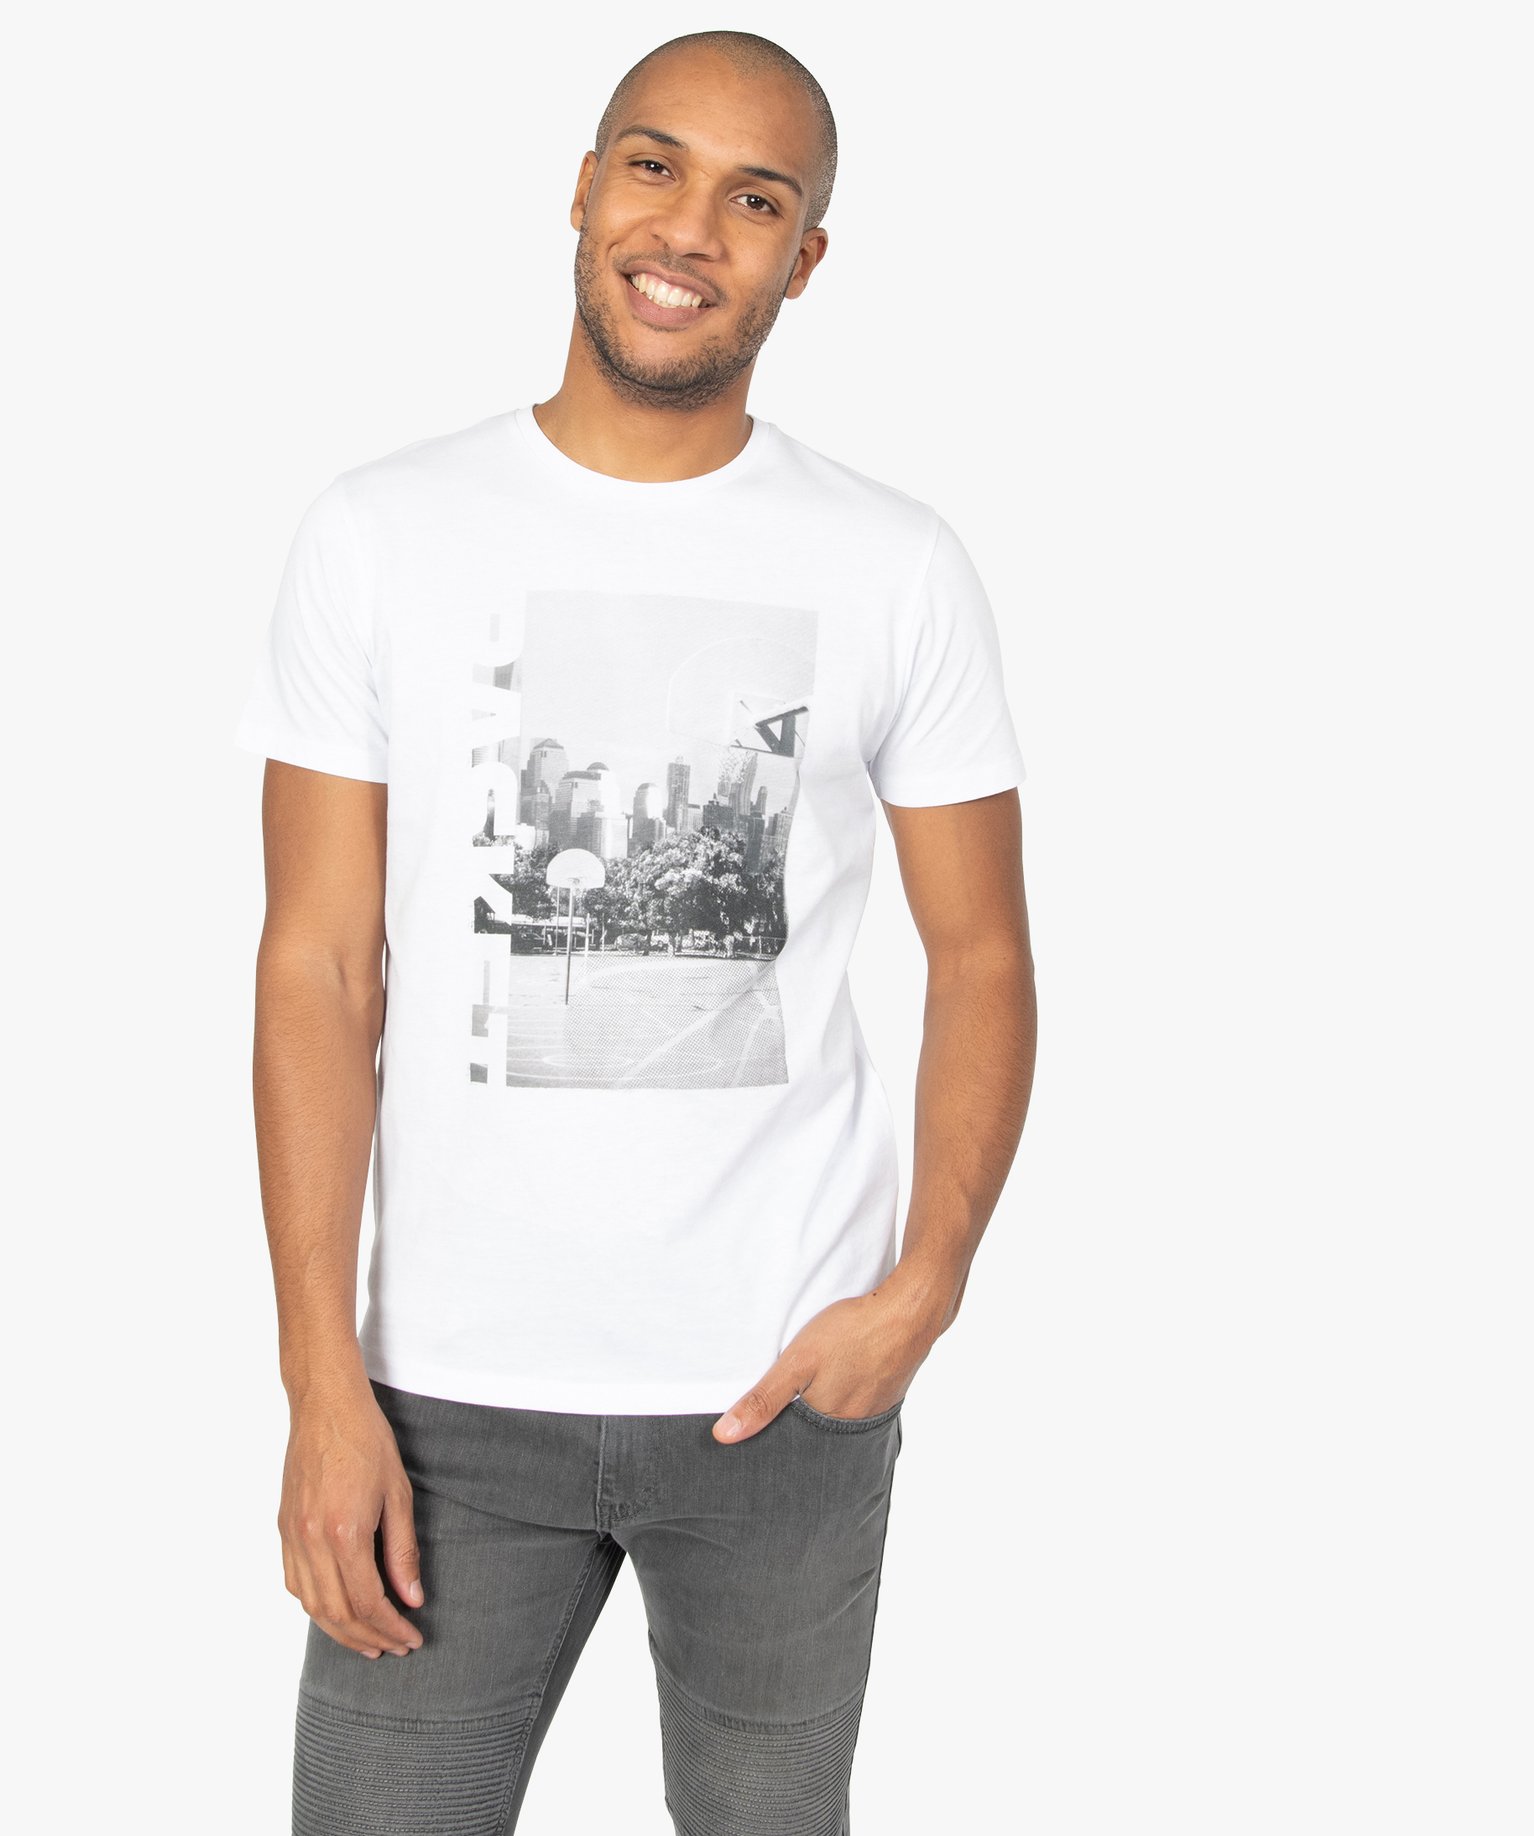 Vêtements Vêtements homme Chemises et t-shirts Débardeurs Tunique manches courtes de couleur grise 